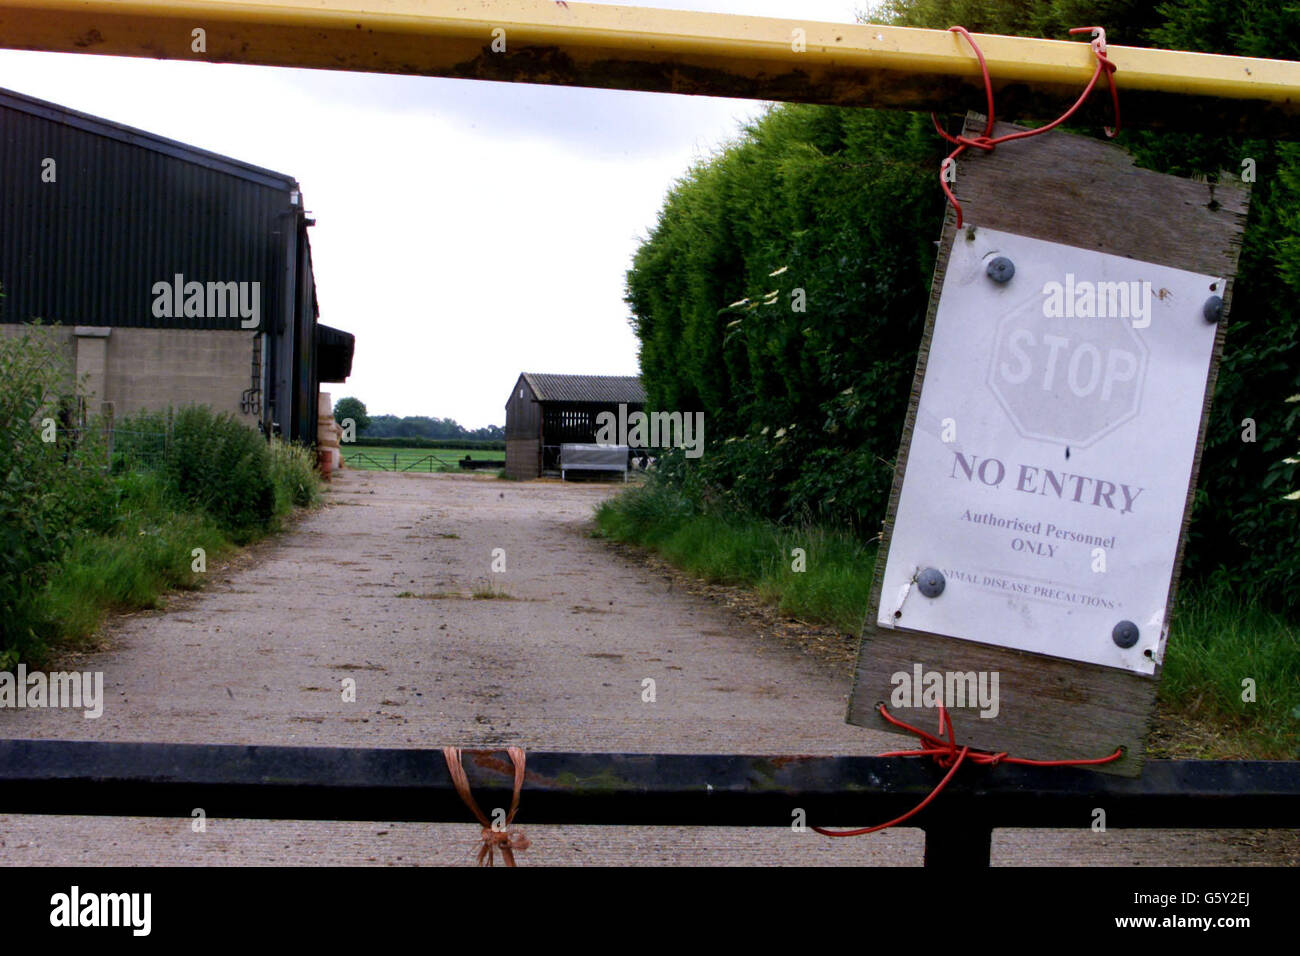 Aucun panneau d'entrée sur les portes de la ferme Fox Covert qui est à côté de Dawkins International, à Congerstone, Leicestershire, où les agents de MAFF ont vérifié la fièvre aphteuse.Les premiers essais effectués sur un porc abattu se sont révélés négatifs. Banque D'Images